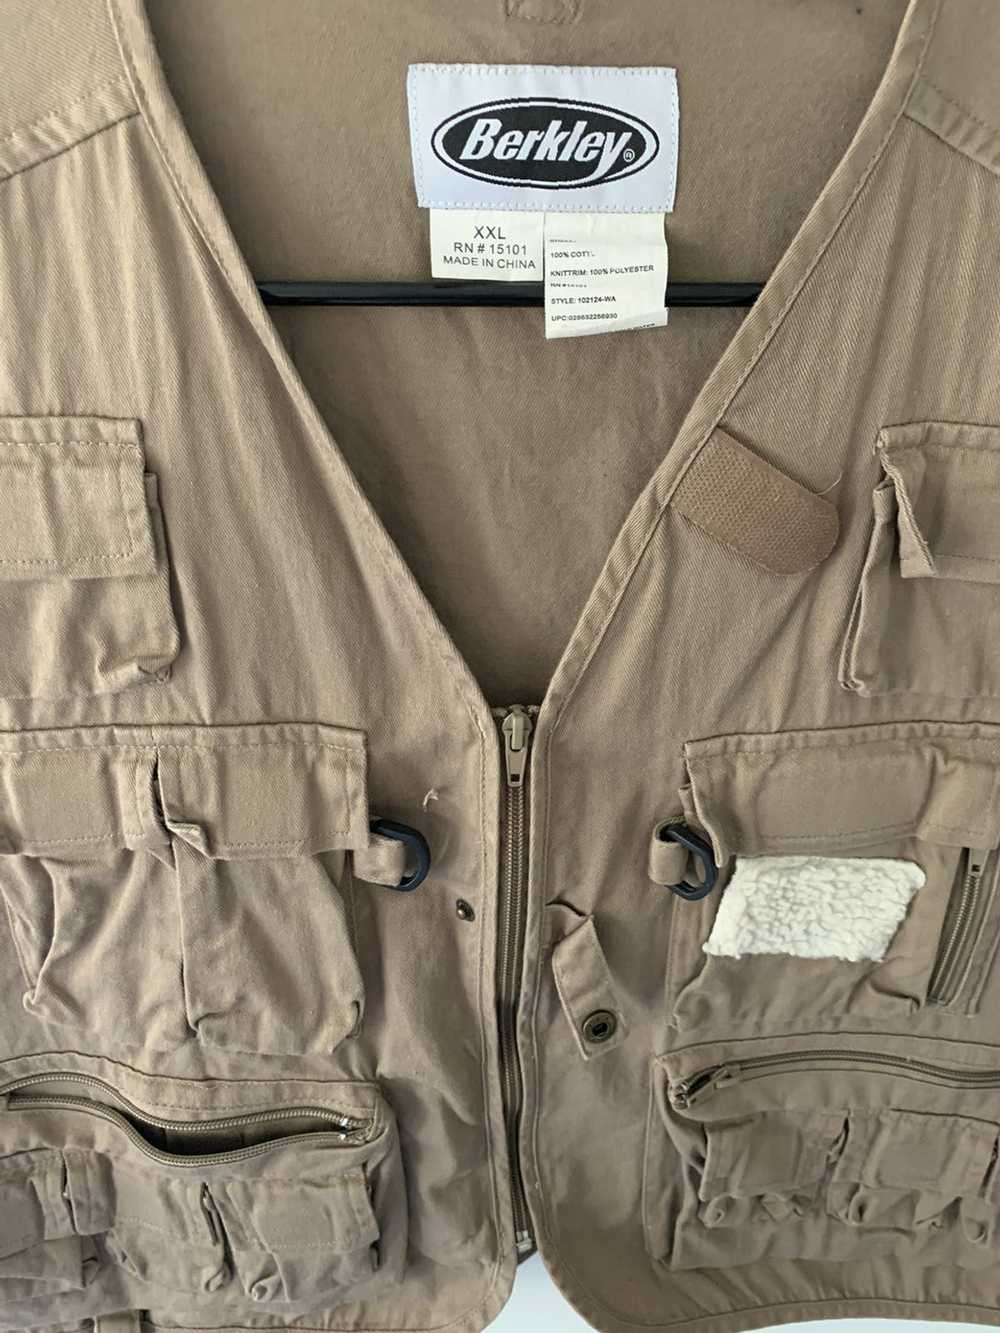 Vintage Vintage Berkley Tactical Fisher Vest - image 2